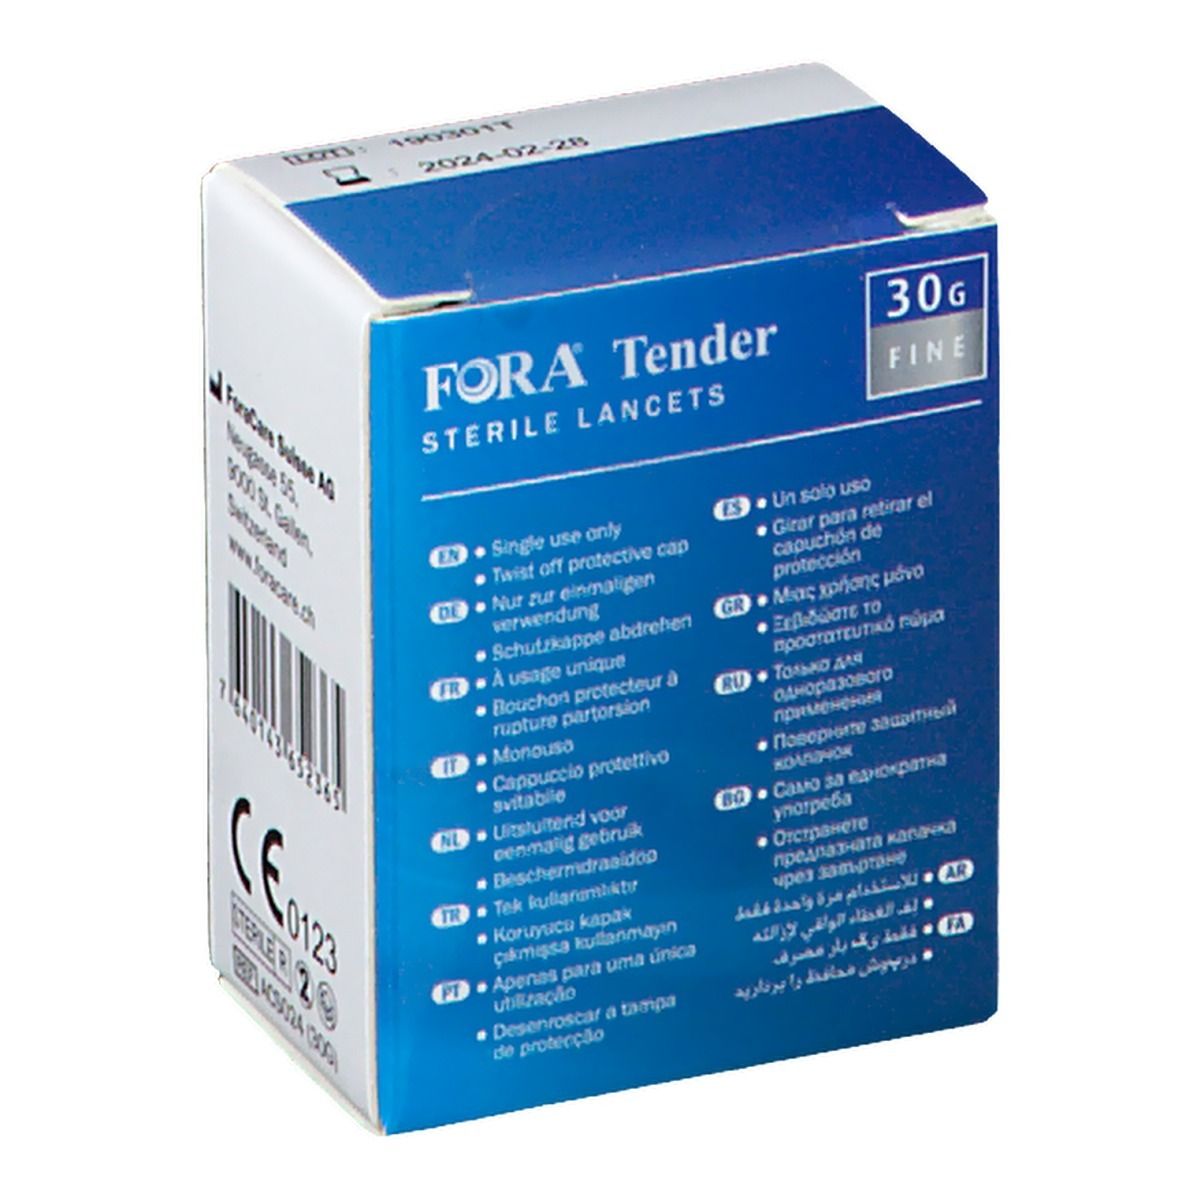 FORA® Tender Lancette Sterili 30g Fine